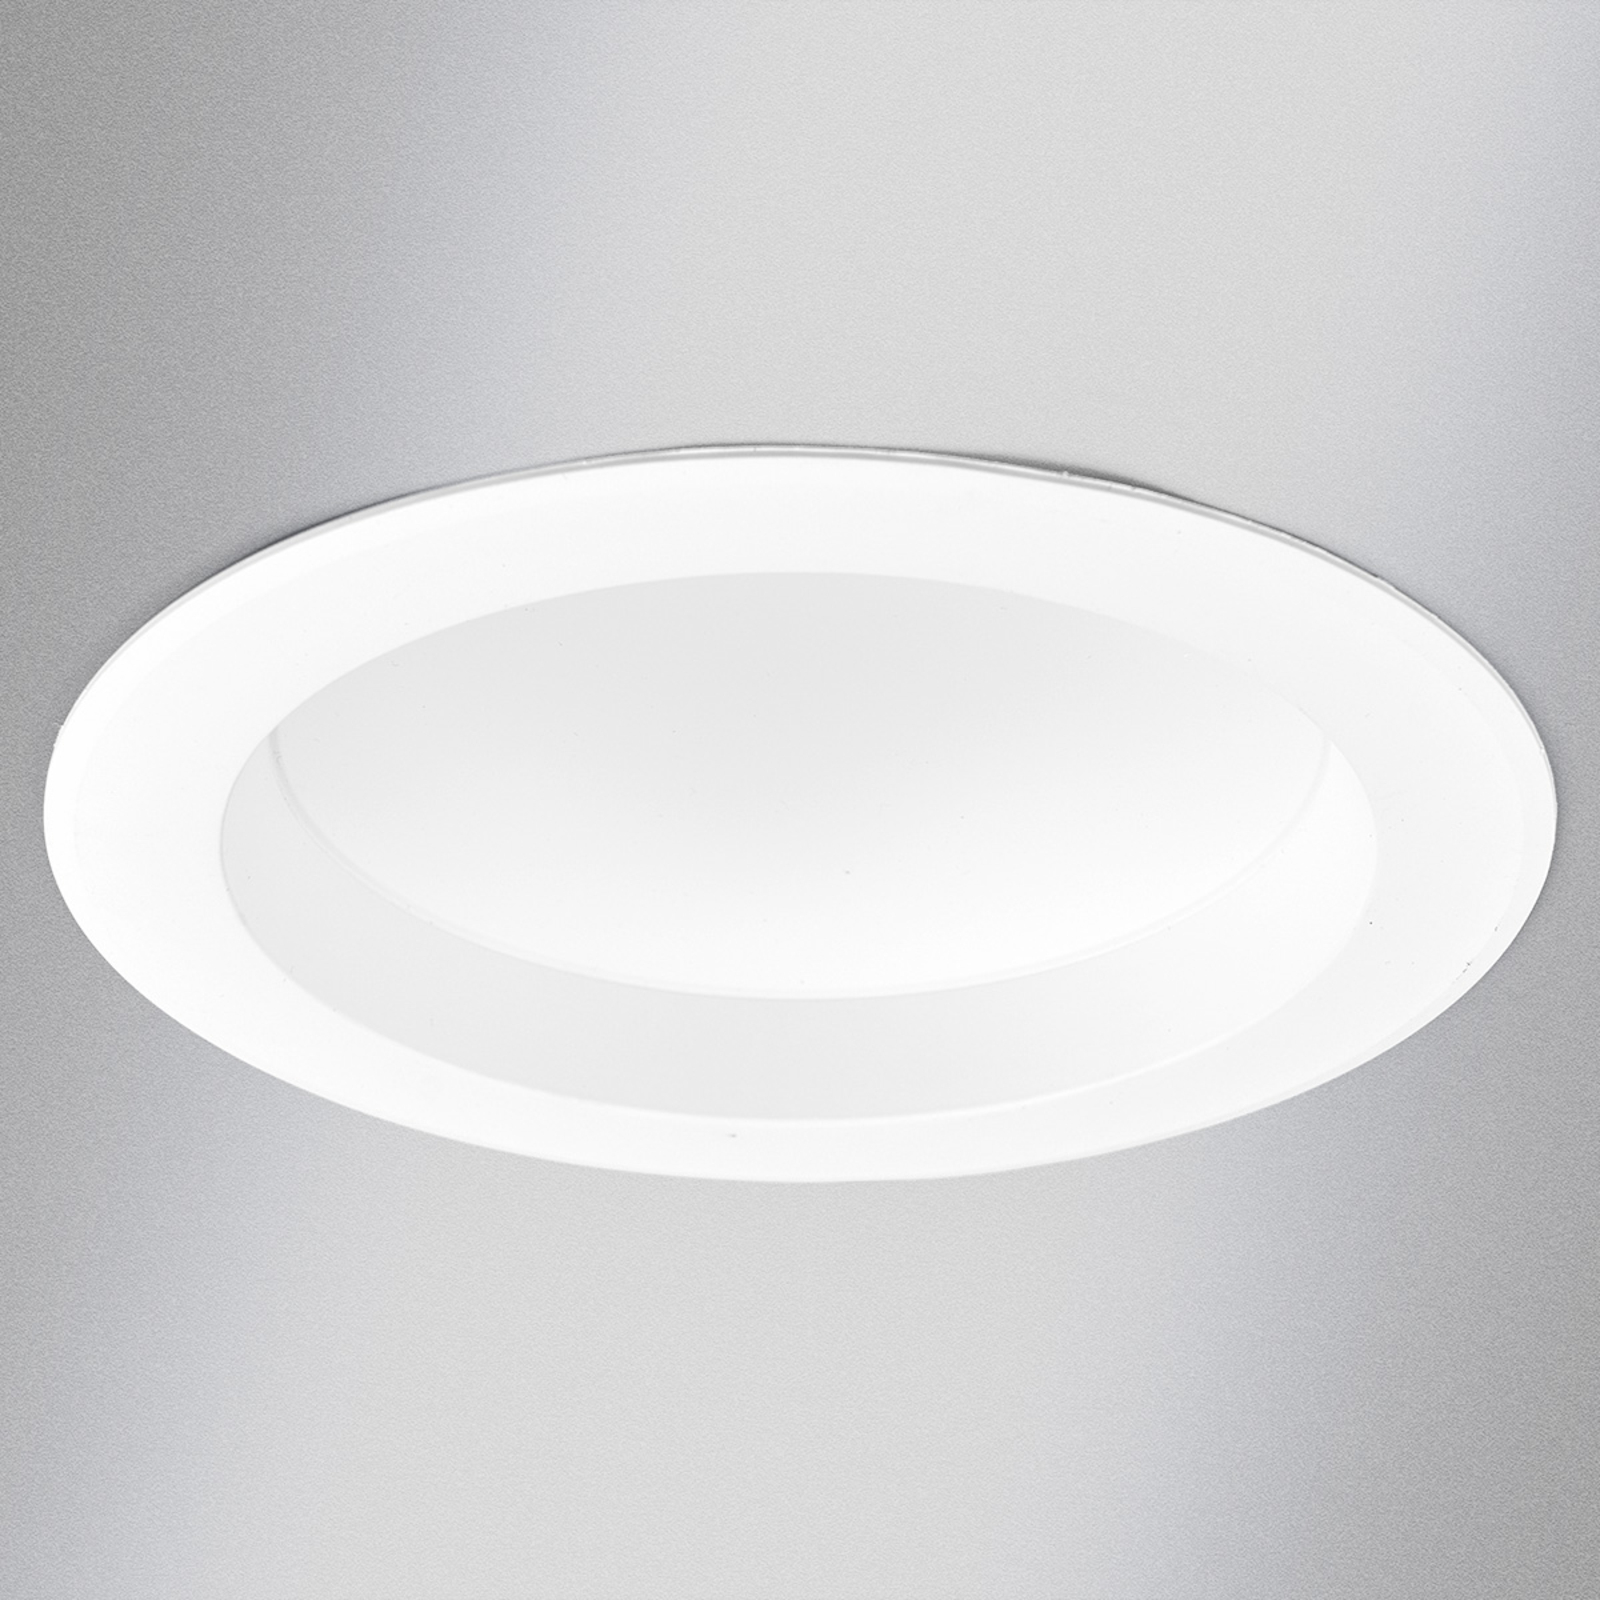 Dający jasne światło downlight LED ARIAN, 17,4 cm